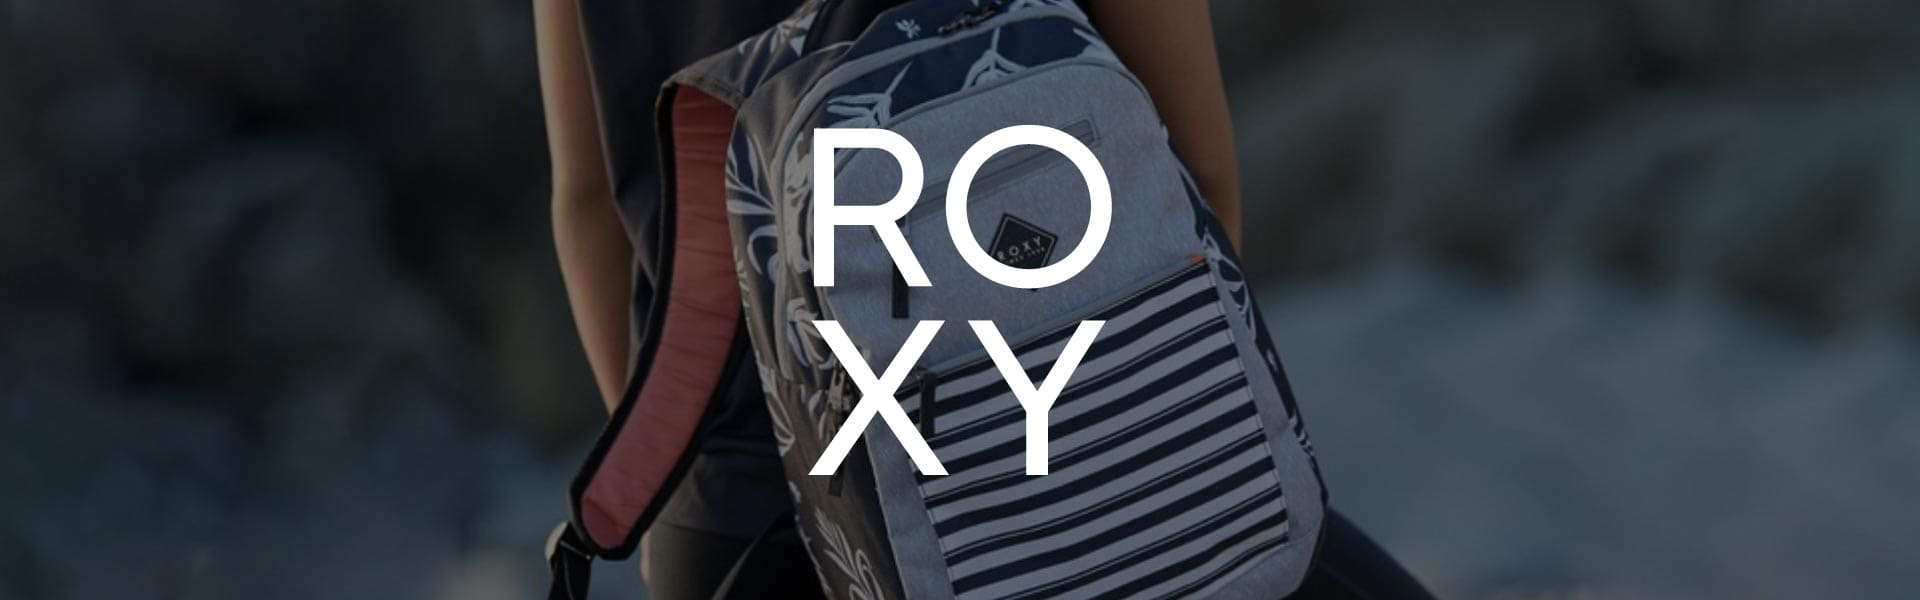 Roxy, ropa y accesorios para mujer- Pilatos Store